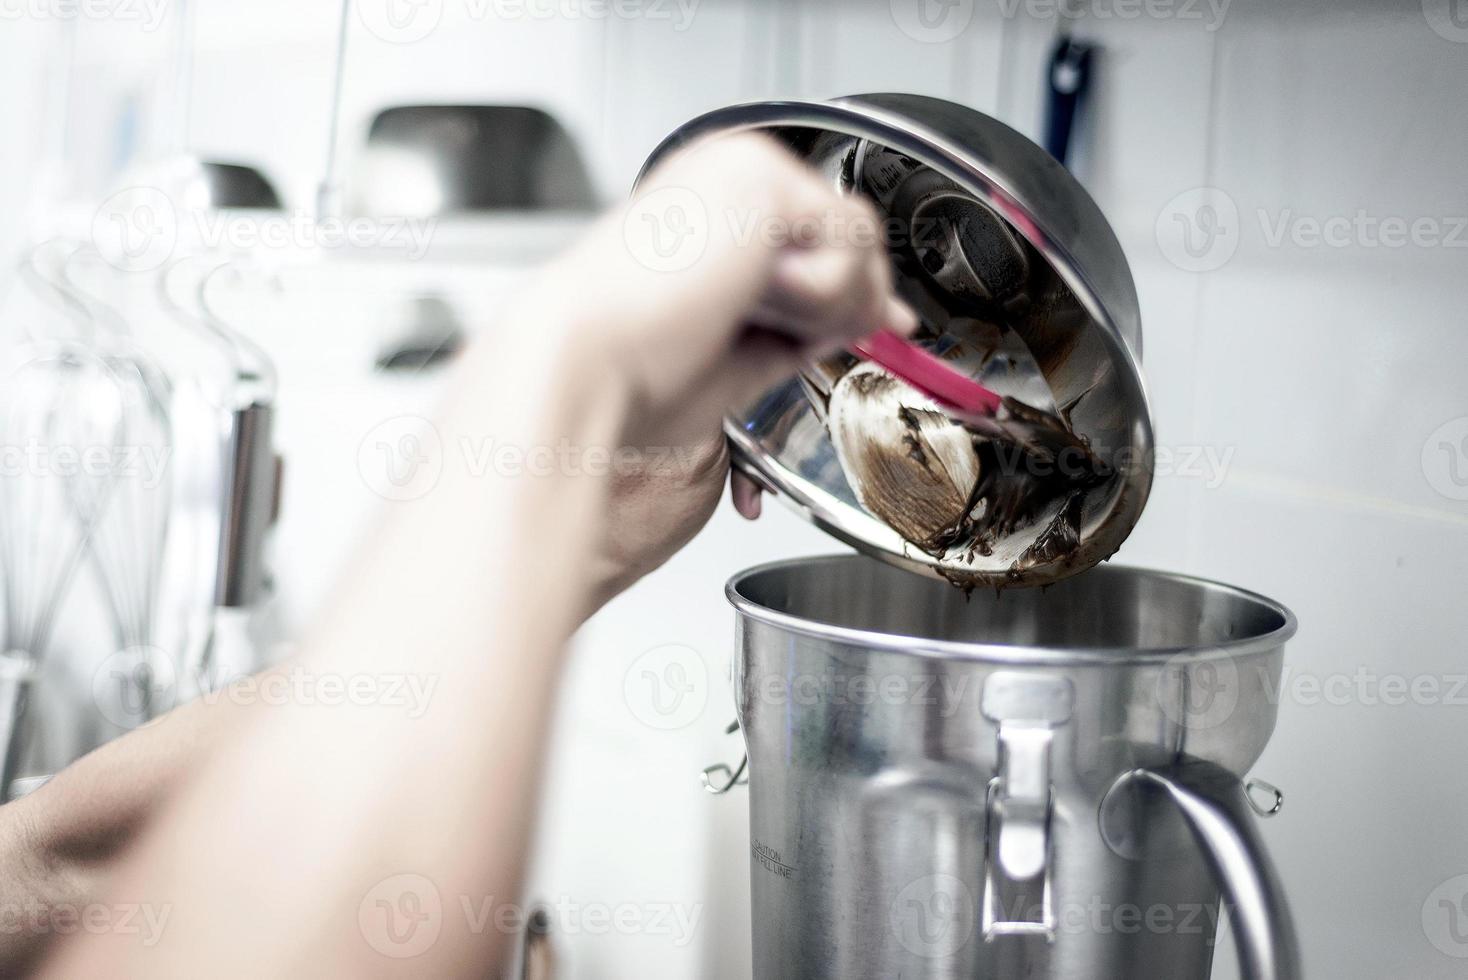 Hacer helado de helado con moderno equipamiento profesional detalle de preparación en el interior de la cocina foto